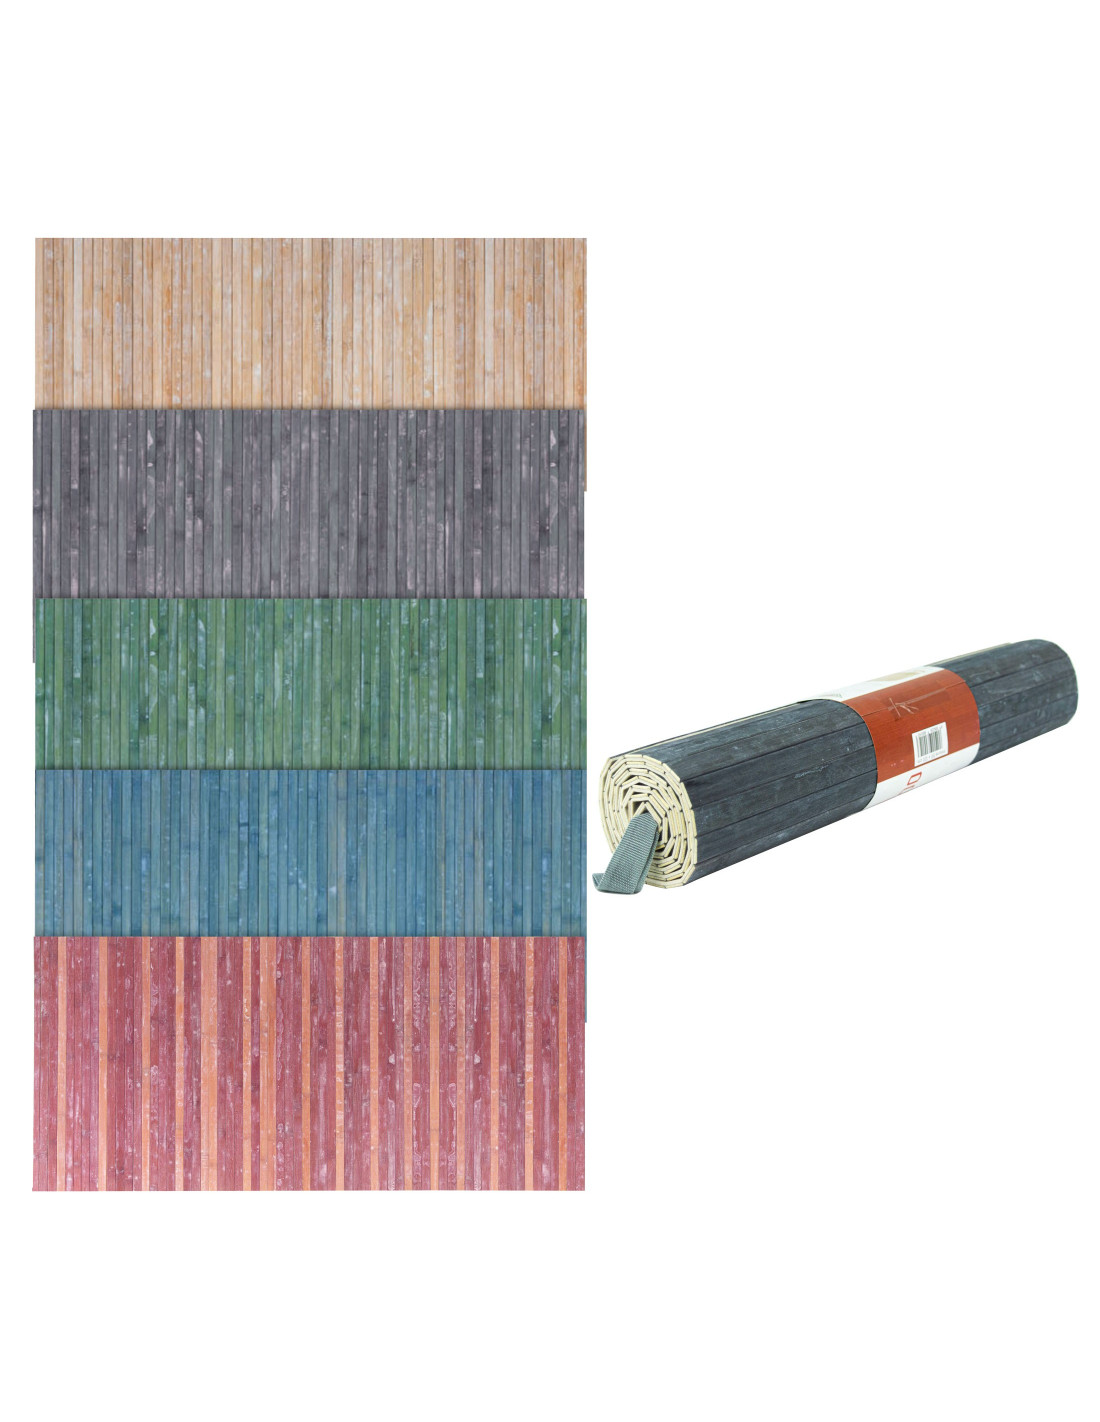 REDS Tappeto in Bamboo con fondo antiscivolo 50x120cm Lavabile